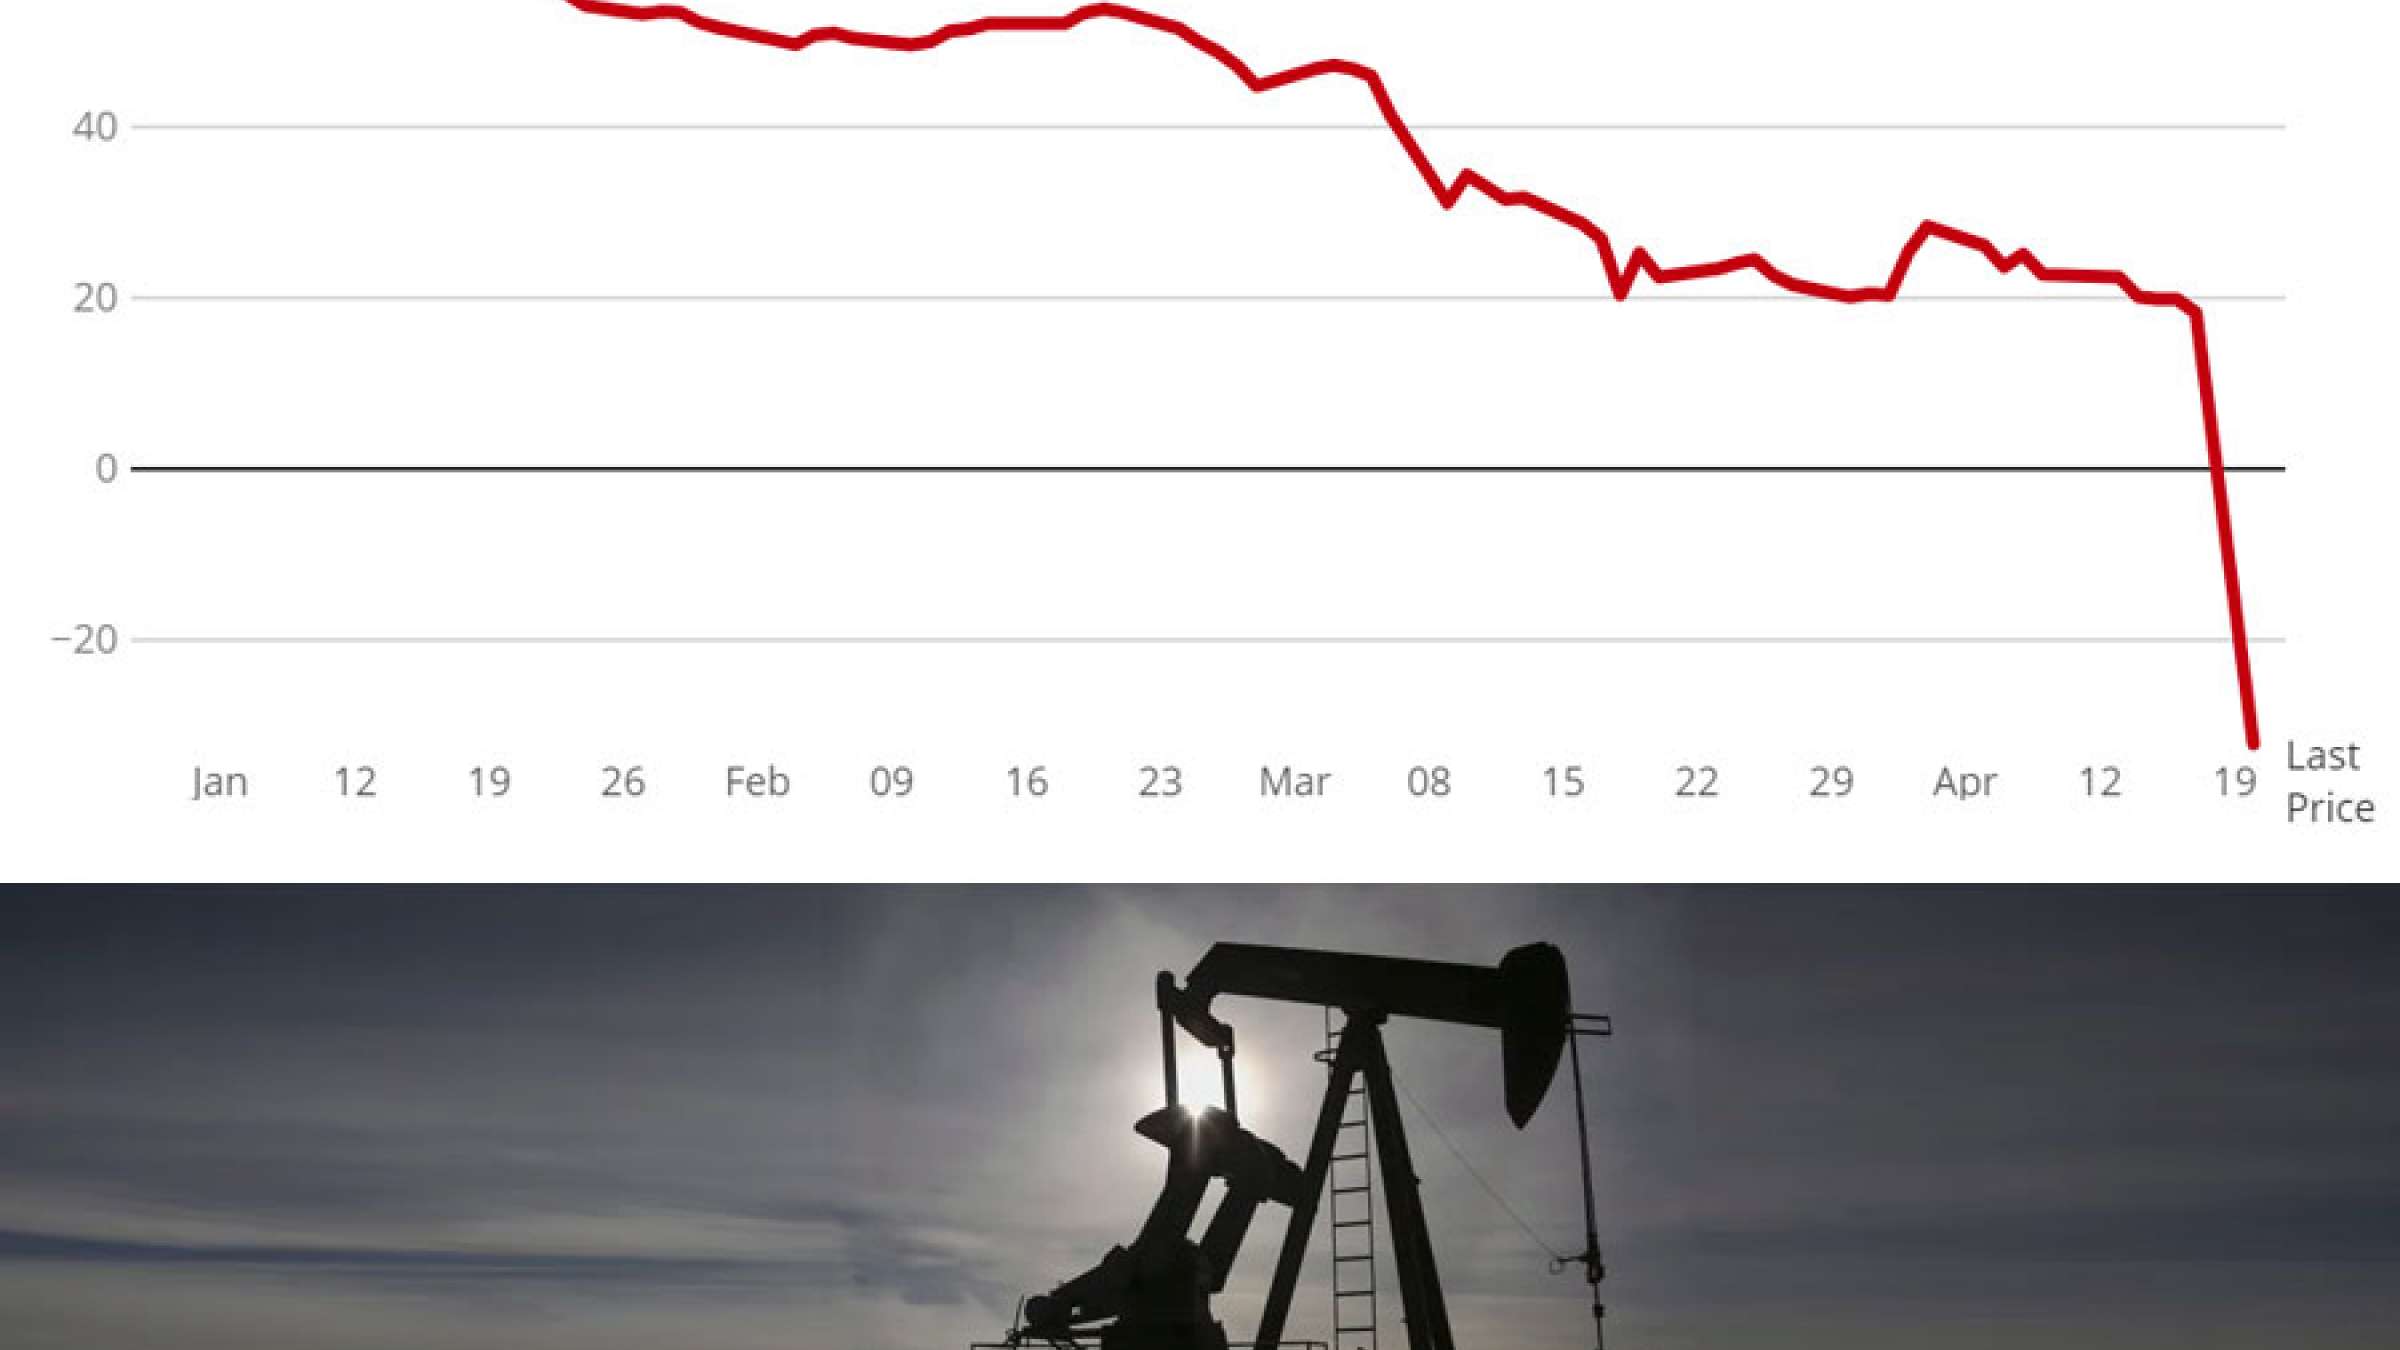 اخبار-کانادا-قیمت-نفت-کانادا-منفی-شد-برای-برداشتن-یک-بشکه-نفت-مجانی-کانادا-37-دلار-پول-هم-بگیرید